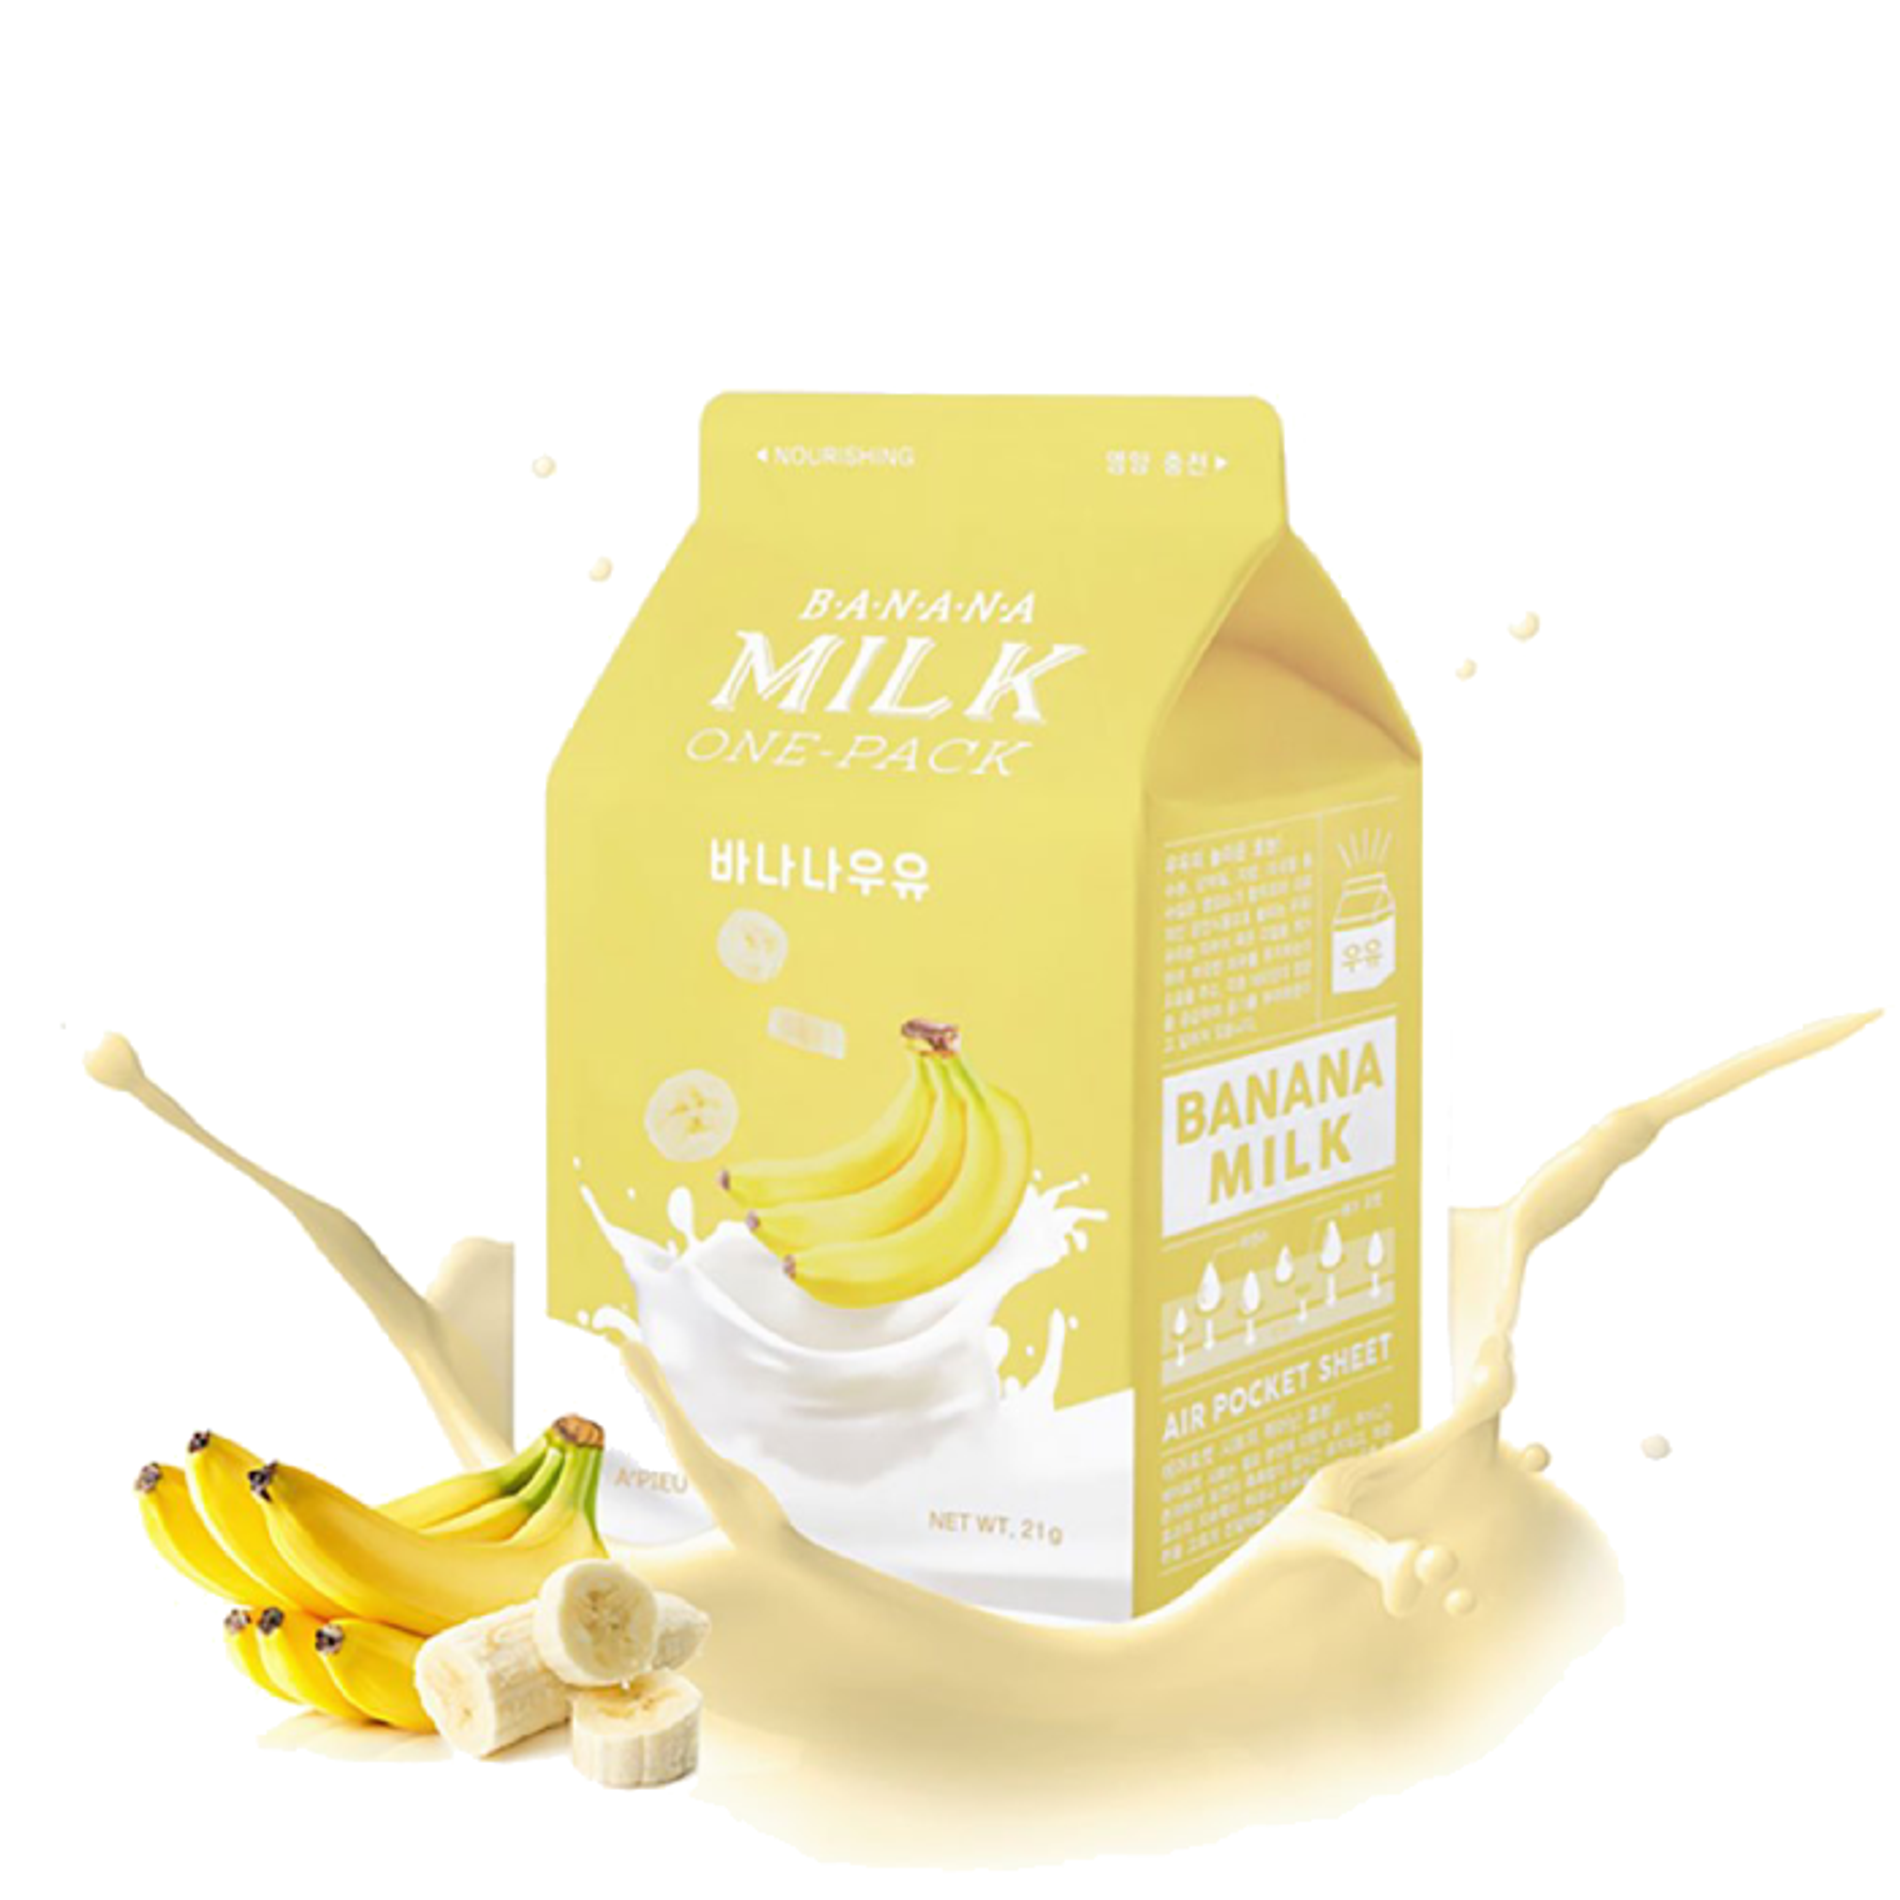 mat-na-giay-nuoi-duong-lan-da-a-pieu-banana-milk-one-pack-21g-2